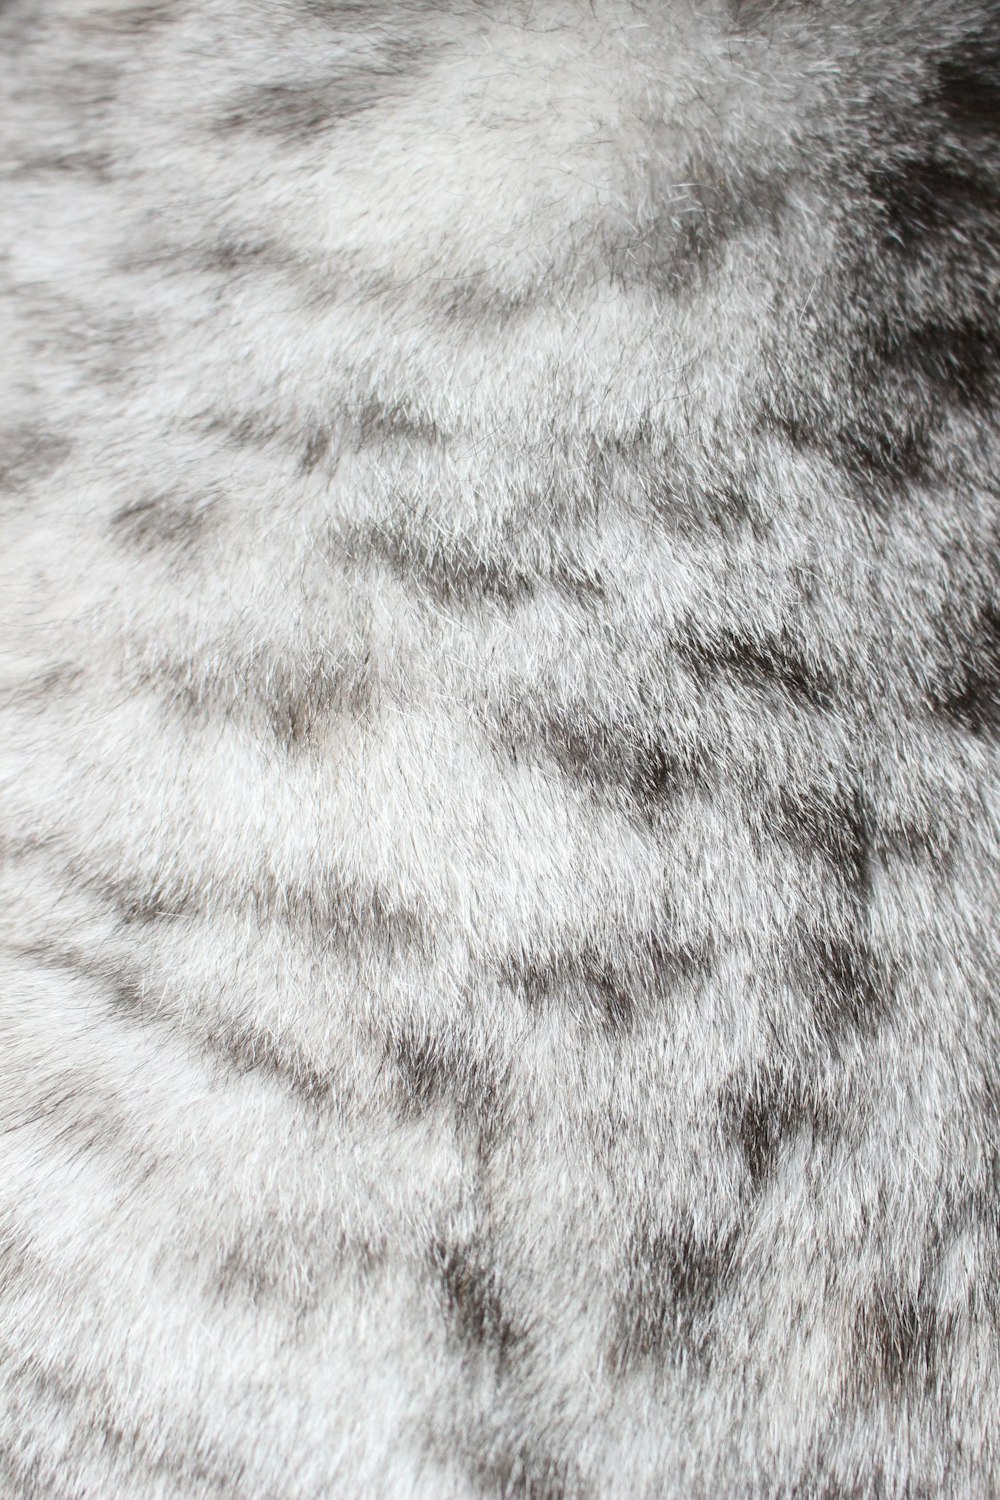 a close up of a fur texture